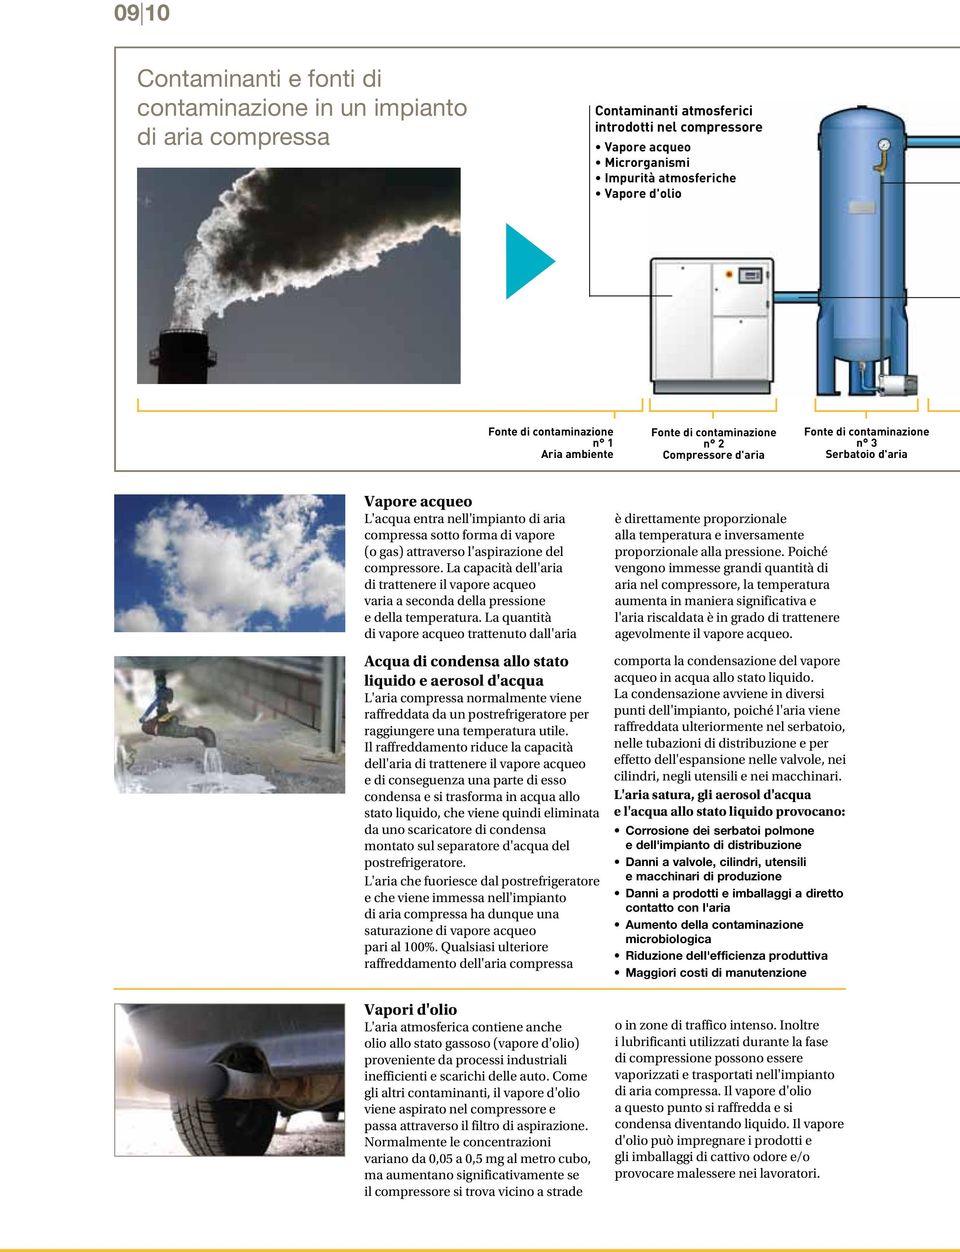 di vapore (o gas) attraverso l'aspirazione del compressore. La capacità dell'aria di trattenere il vapore acqueo varia a seconda della pressione e della temperatura.